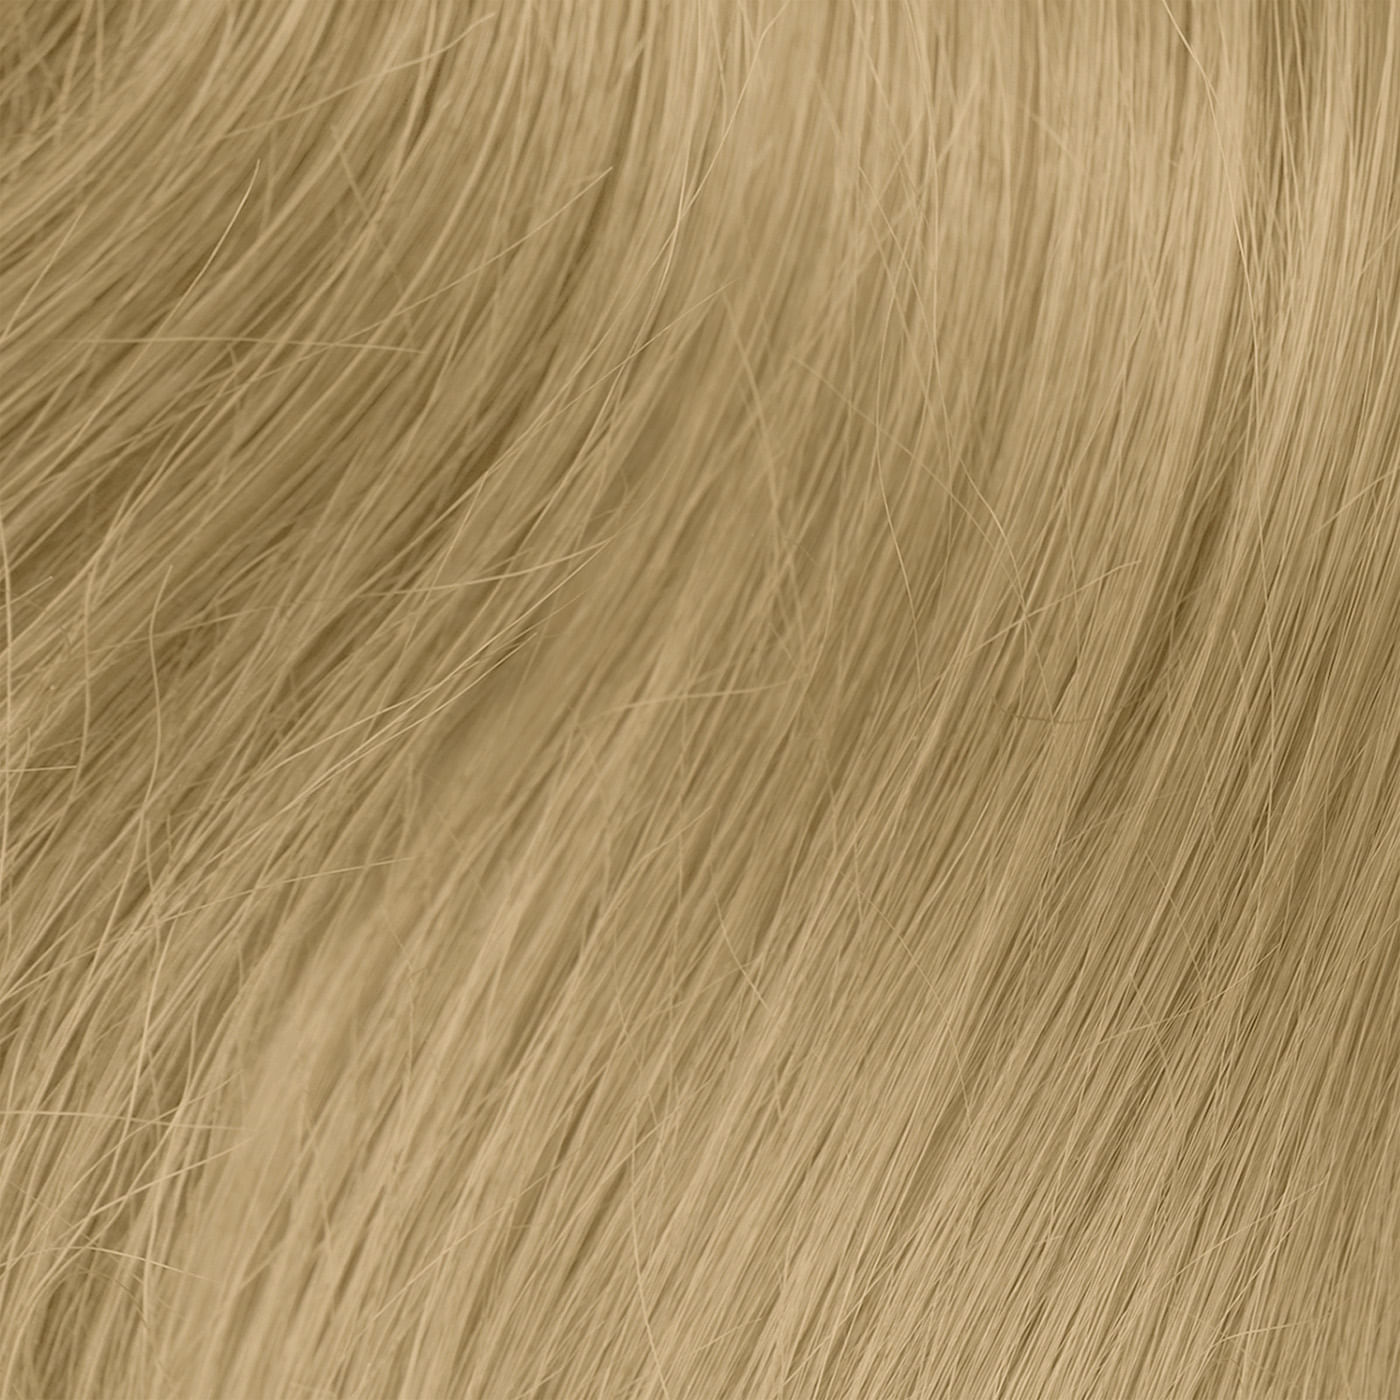 Imagen de 10G Very Light Golden Blonde